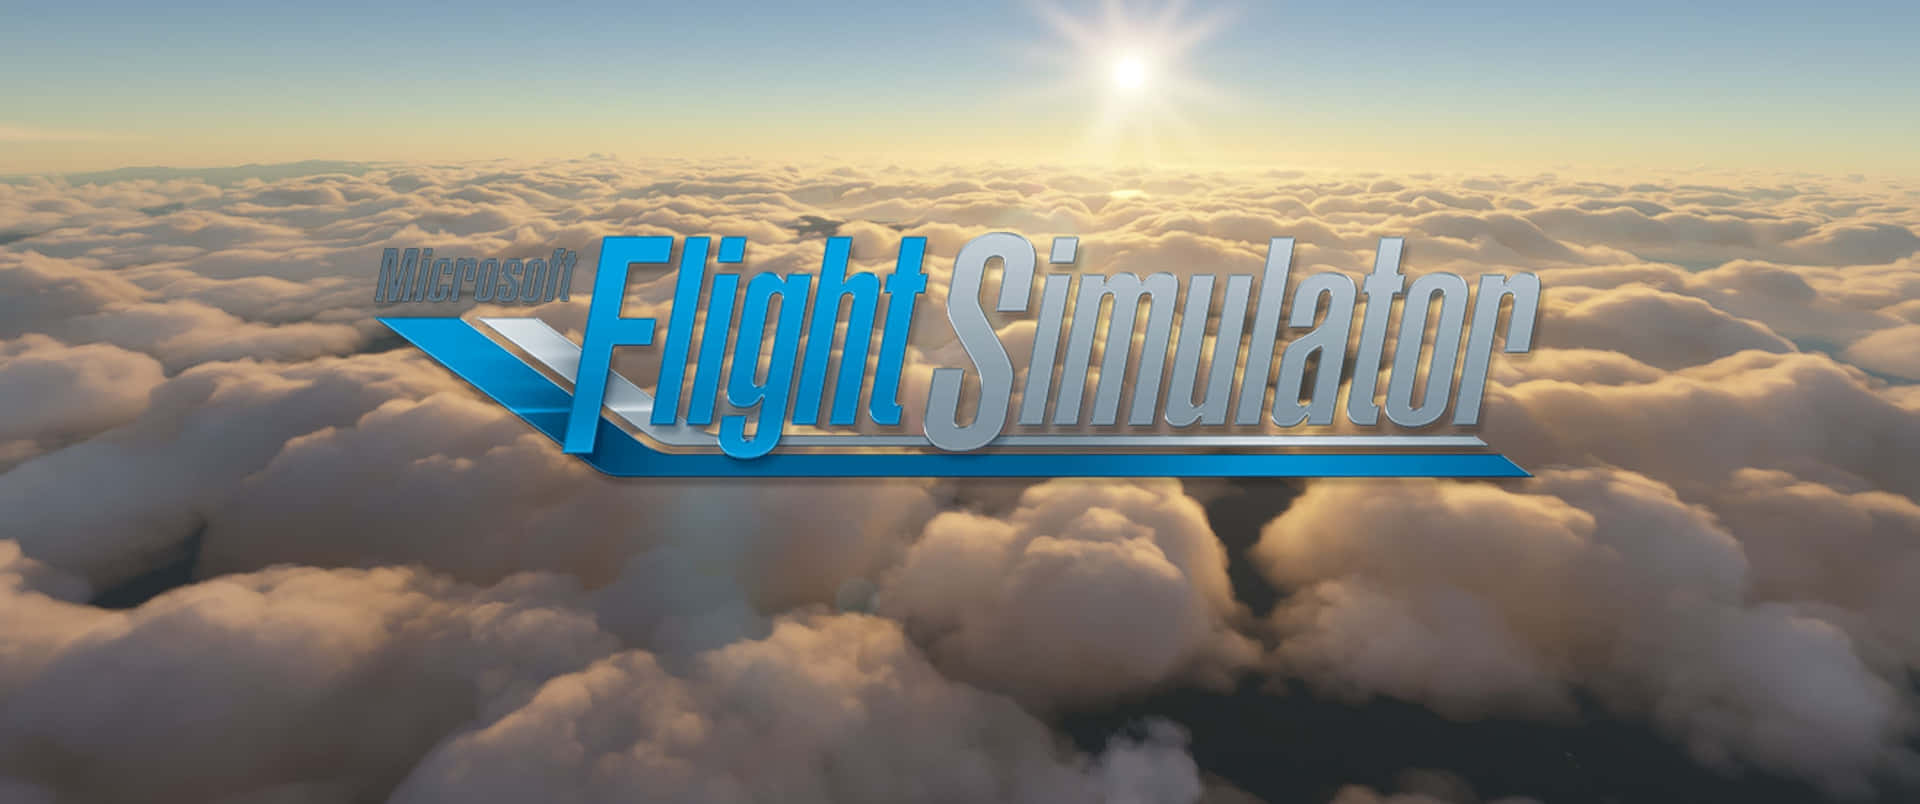 Comienzatus Próximas Aventuras En El Microsoft Flight Simulator.